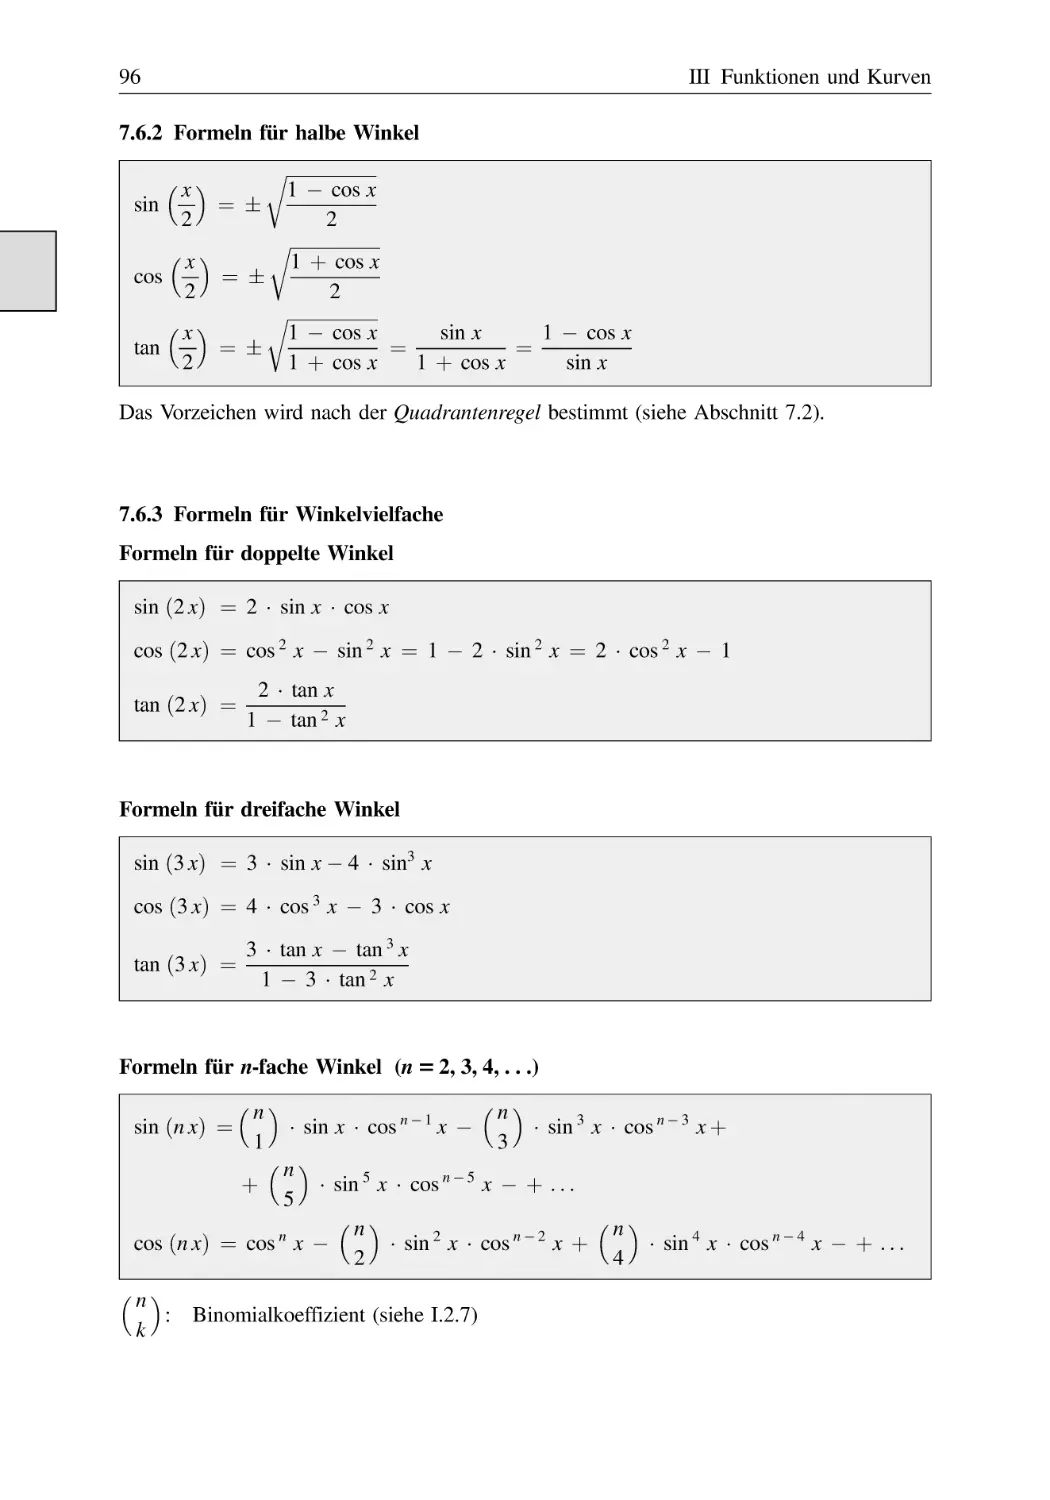 7.6.2 Formeln für halbe Winkel
7.6.3 Formeln für Winkelvielfache